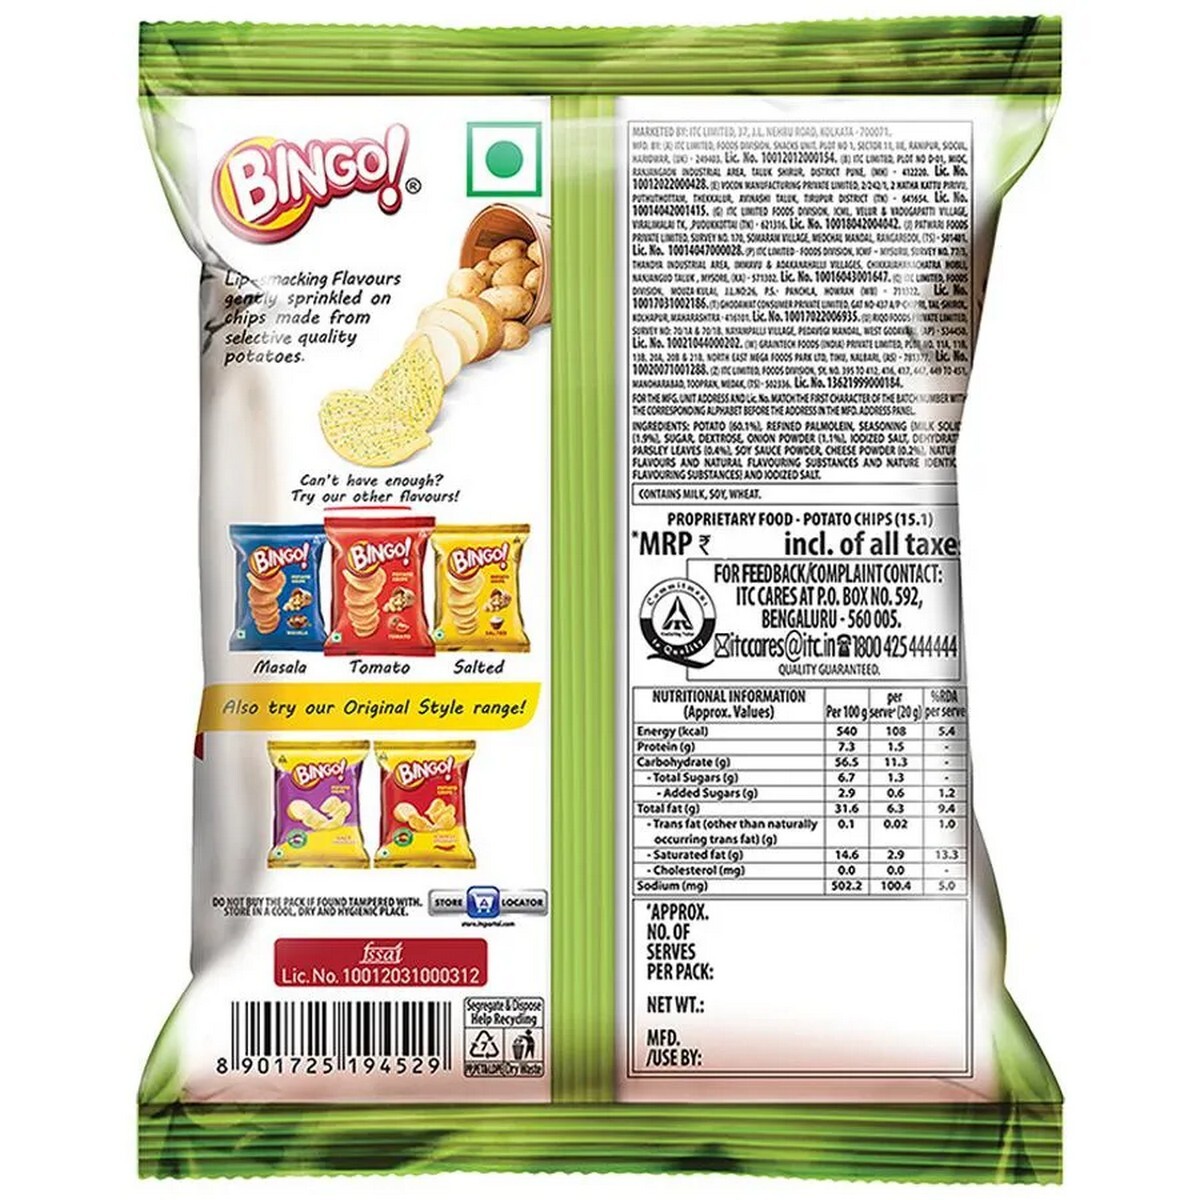 Bingo Yumitos Cream & Onion Potato Chips 24g